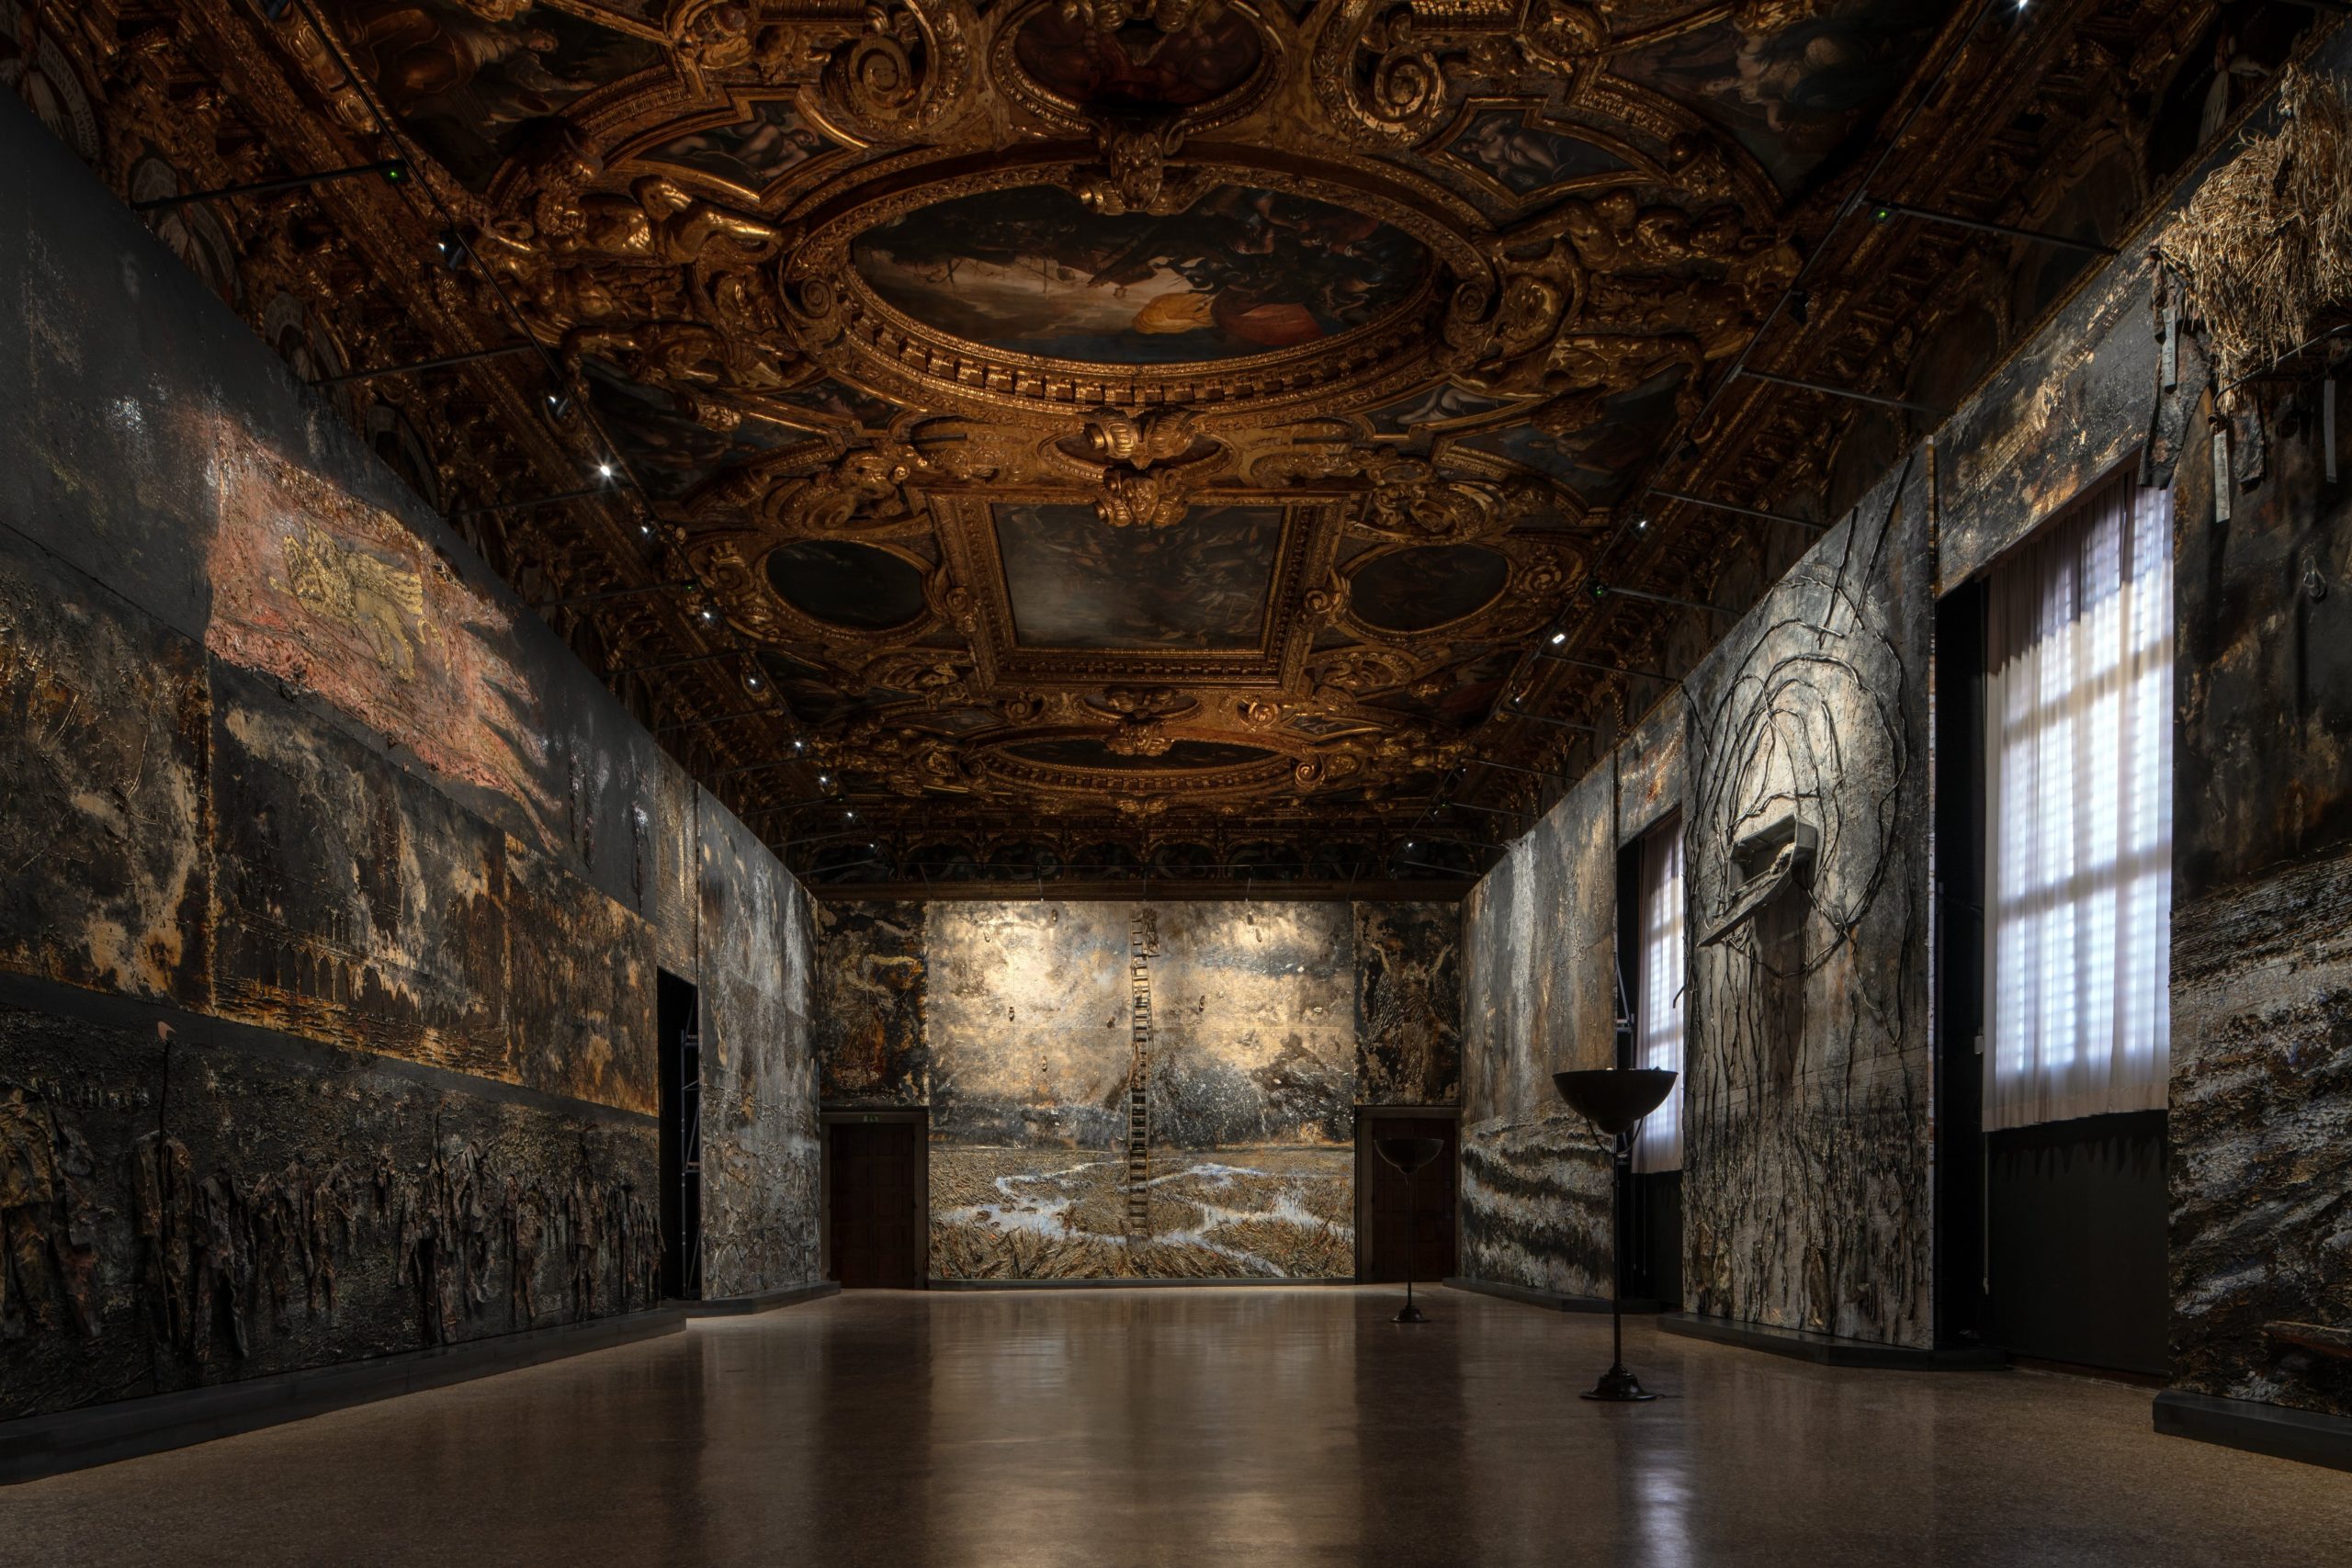 Anselm Kiefer, installation view at the Palazzo Ducale, photo by Andrea Avezzu, courtesy of the artist and Fondazione Musei Civici di Venezia.